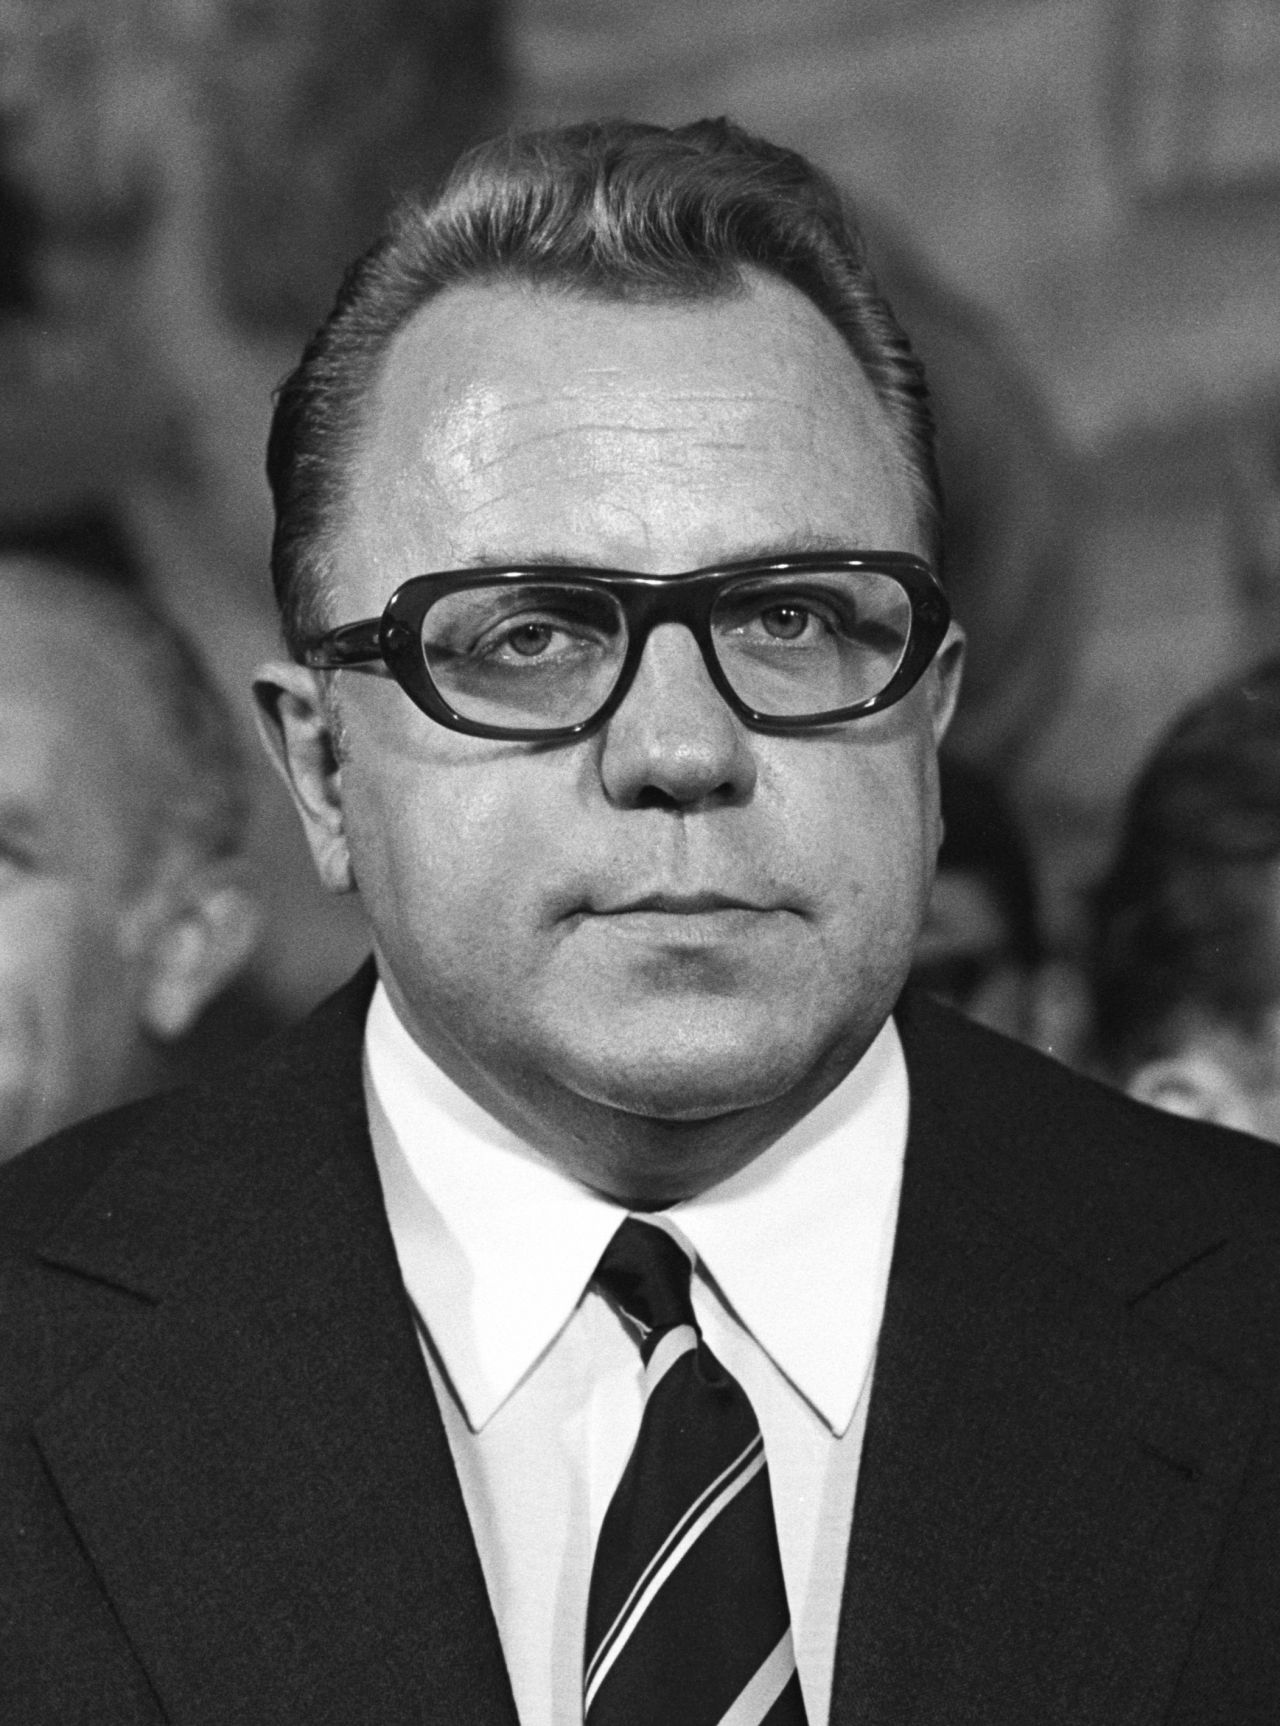 Porträtfoto von Michael Kohl, Staatssekretär beim Ministerrat der DDR, 1973.